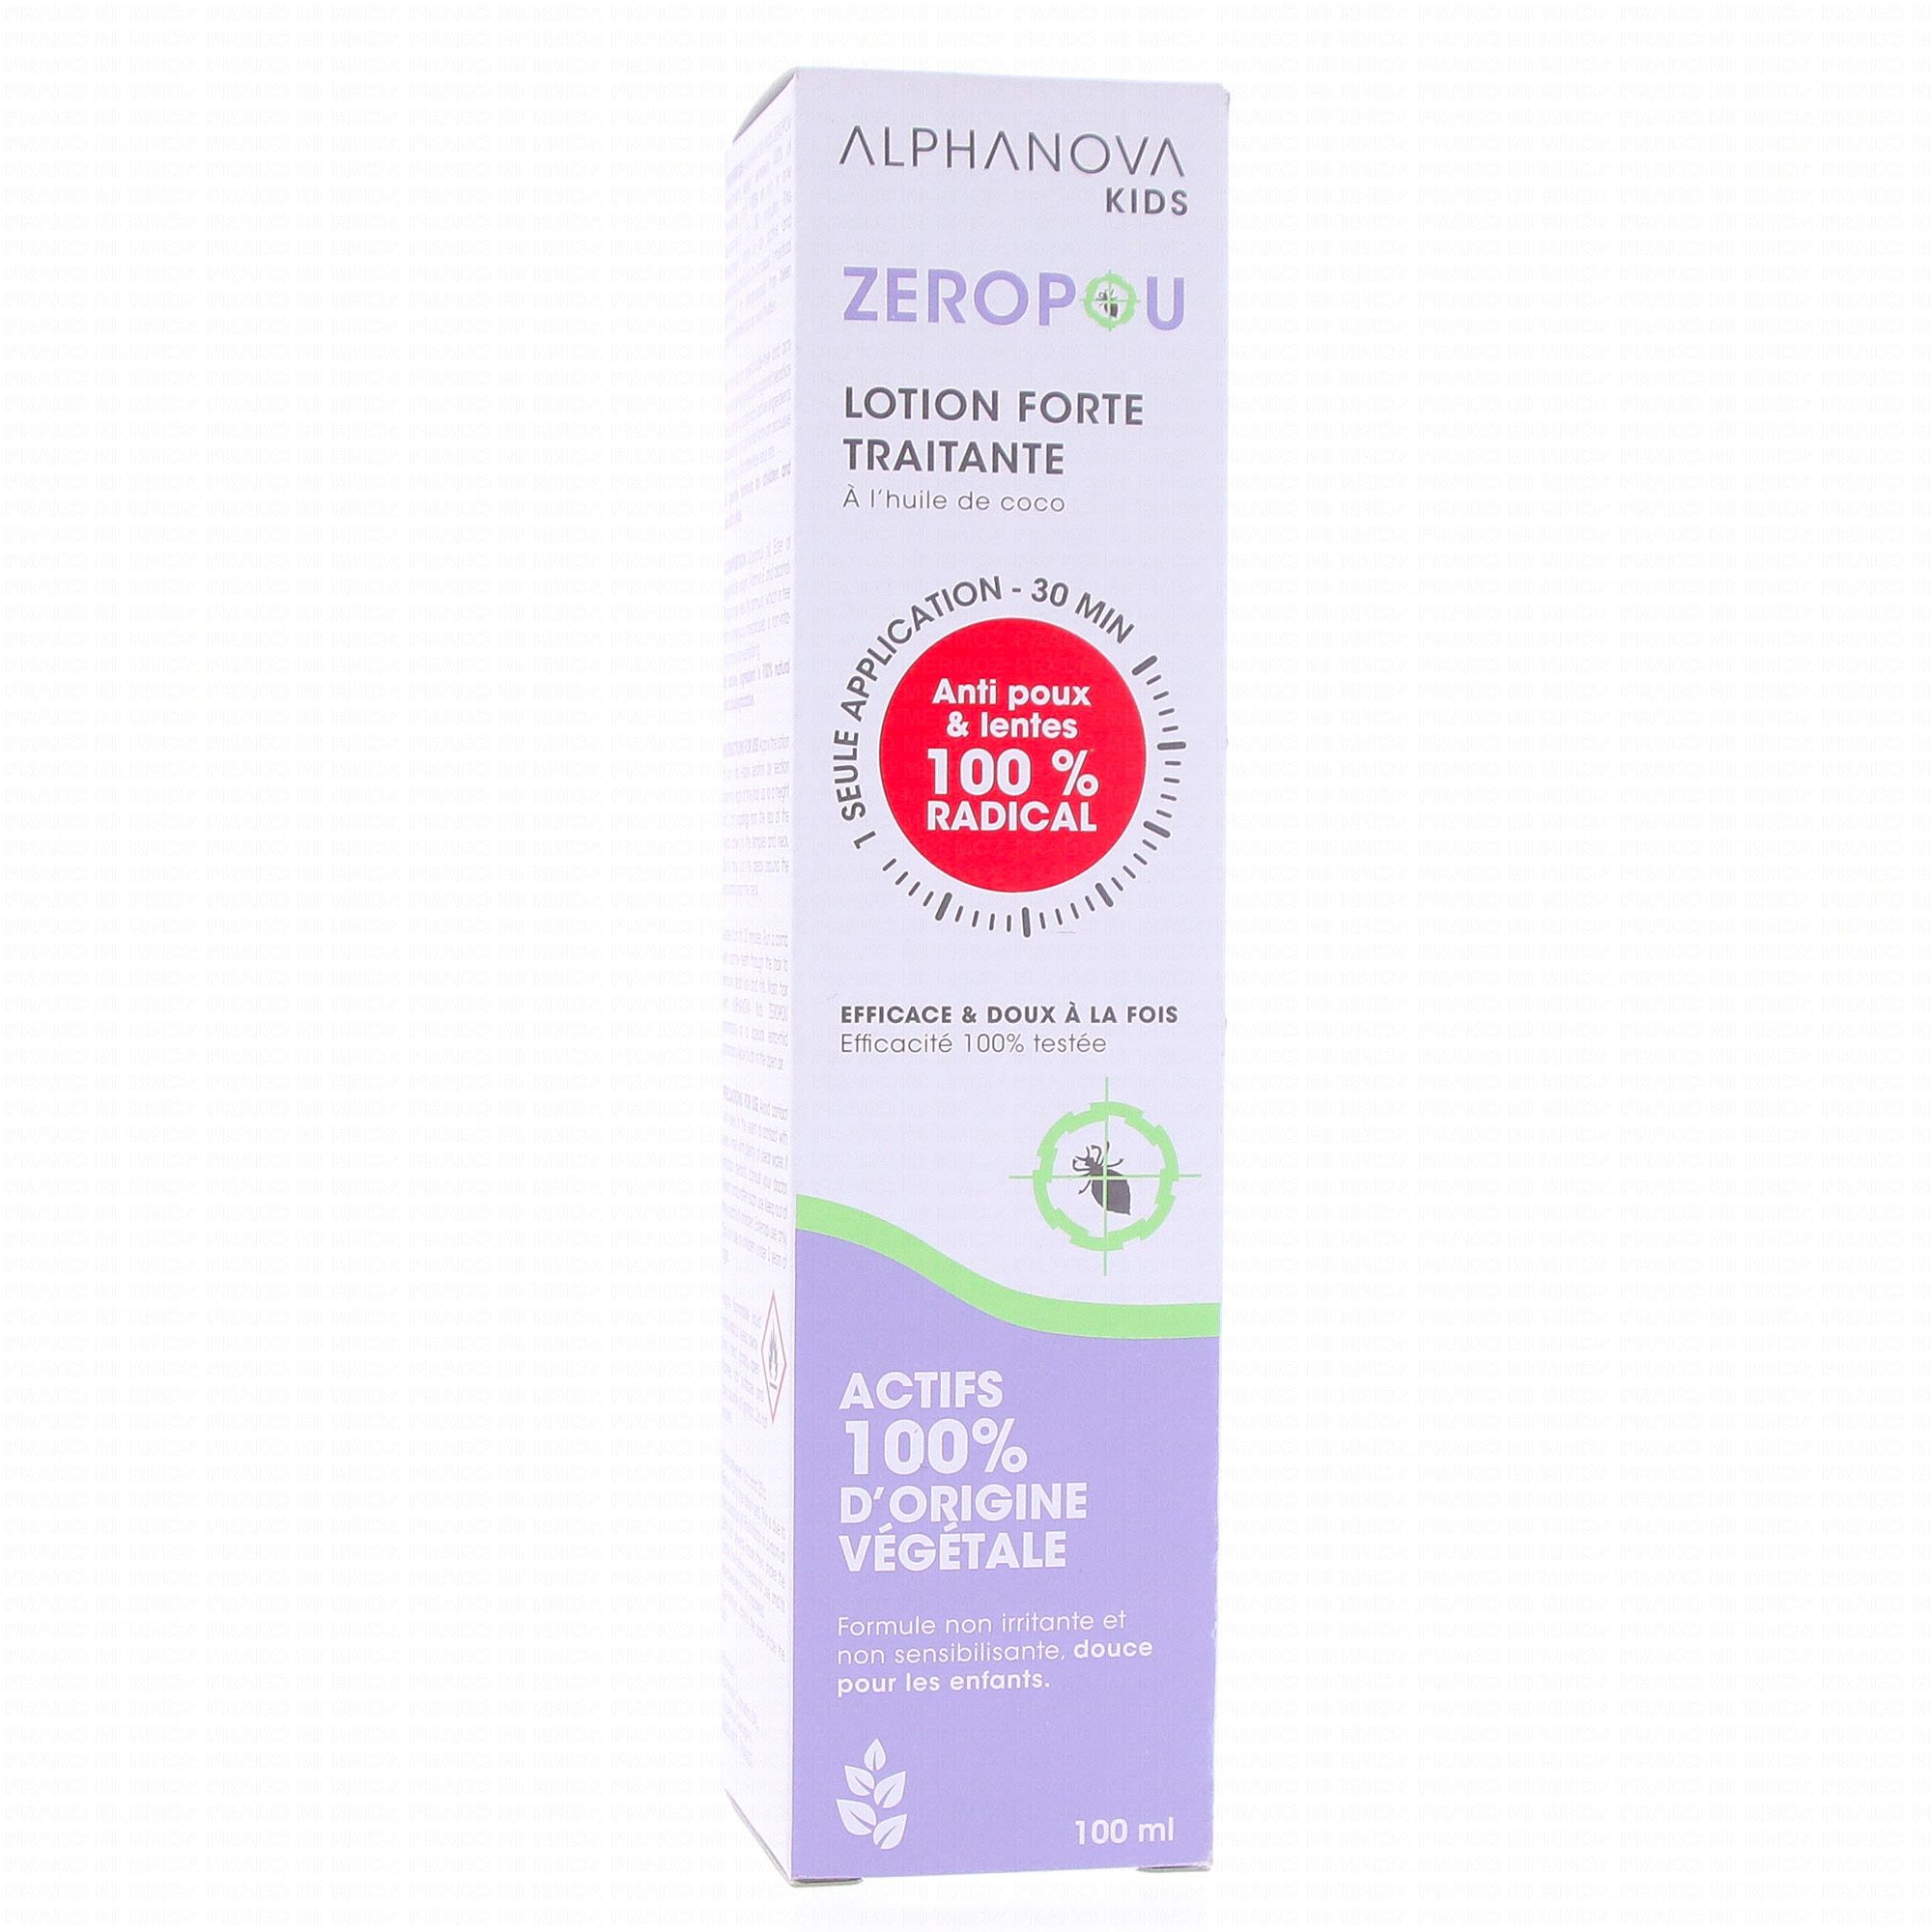 Zéropou shampoing bio - 200ml, Alphanova